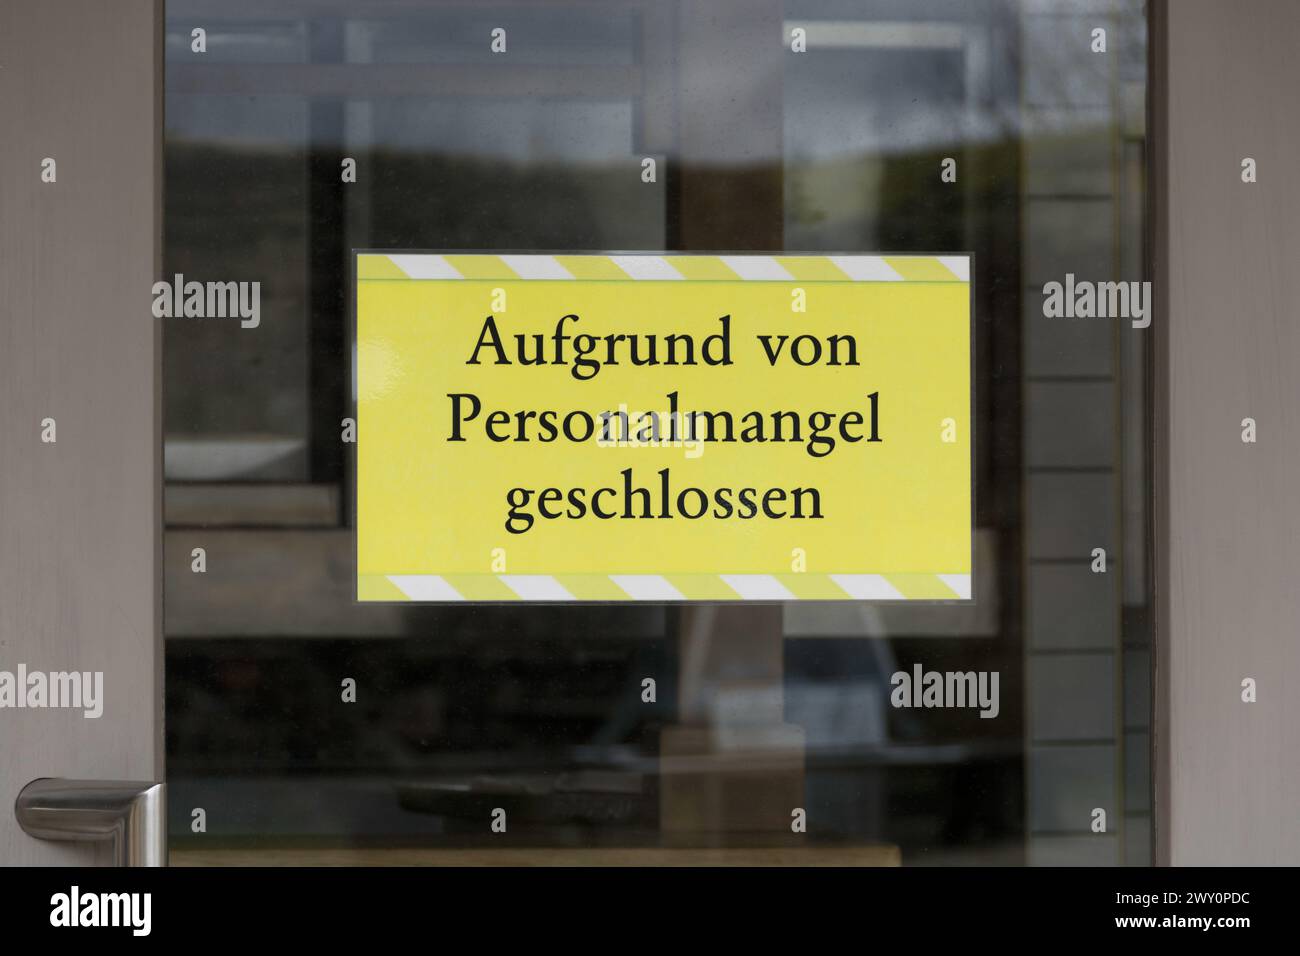 Information sign in German: Aufgrund von Personalmangel geschlossen (Closed due to staff shortages) Stock Photo